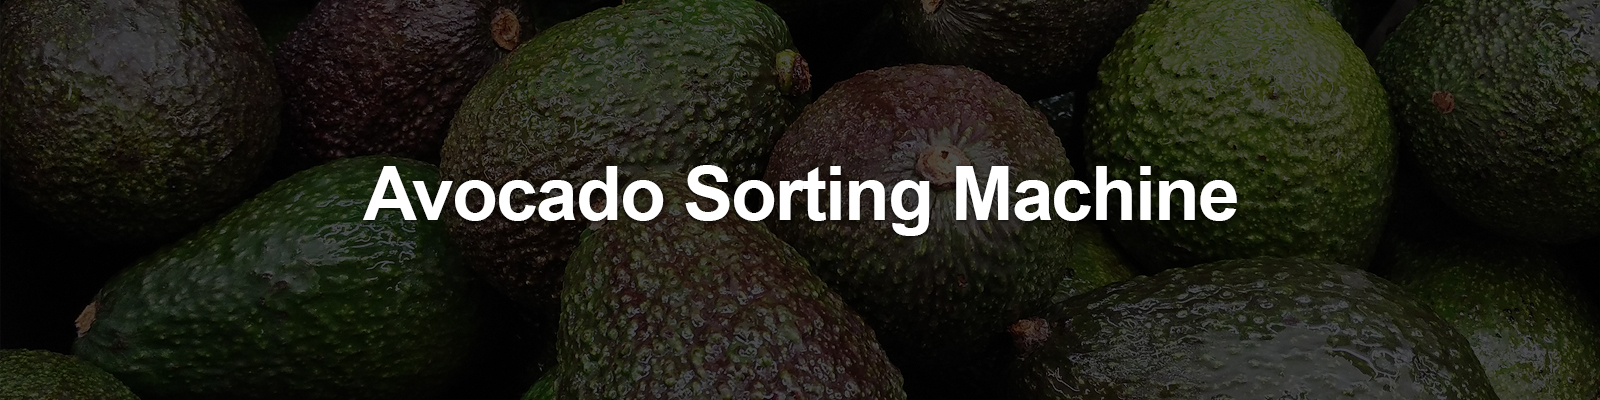 avocado sorting machine